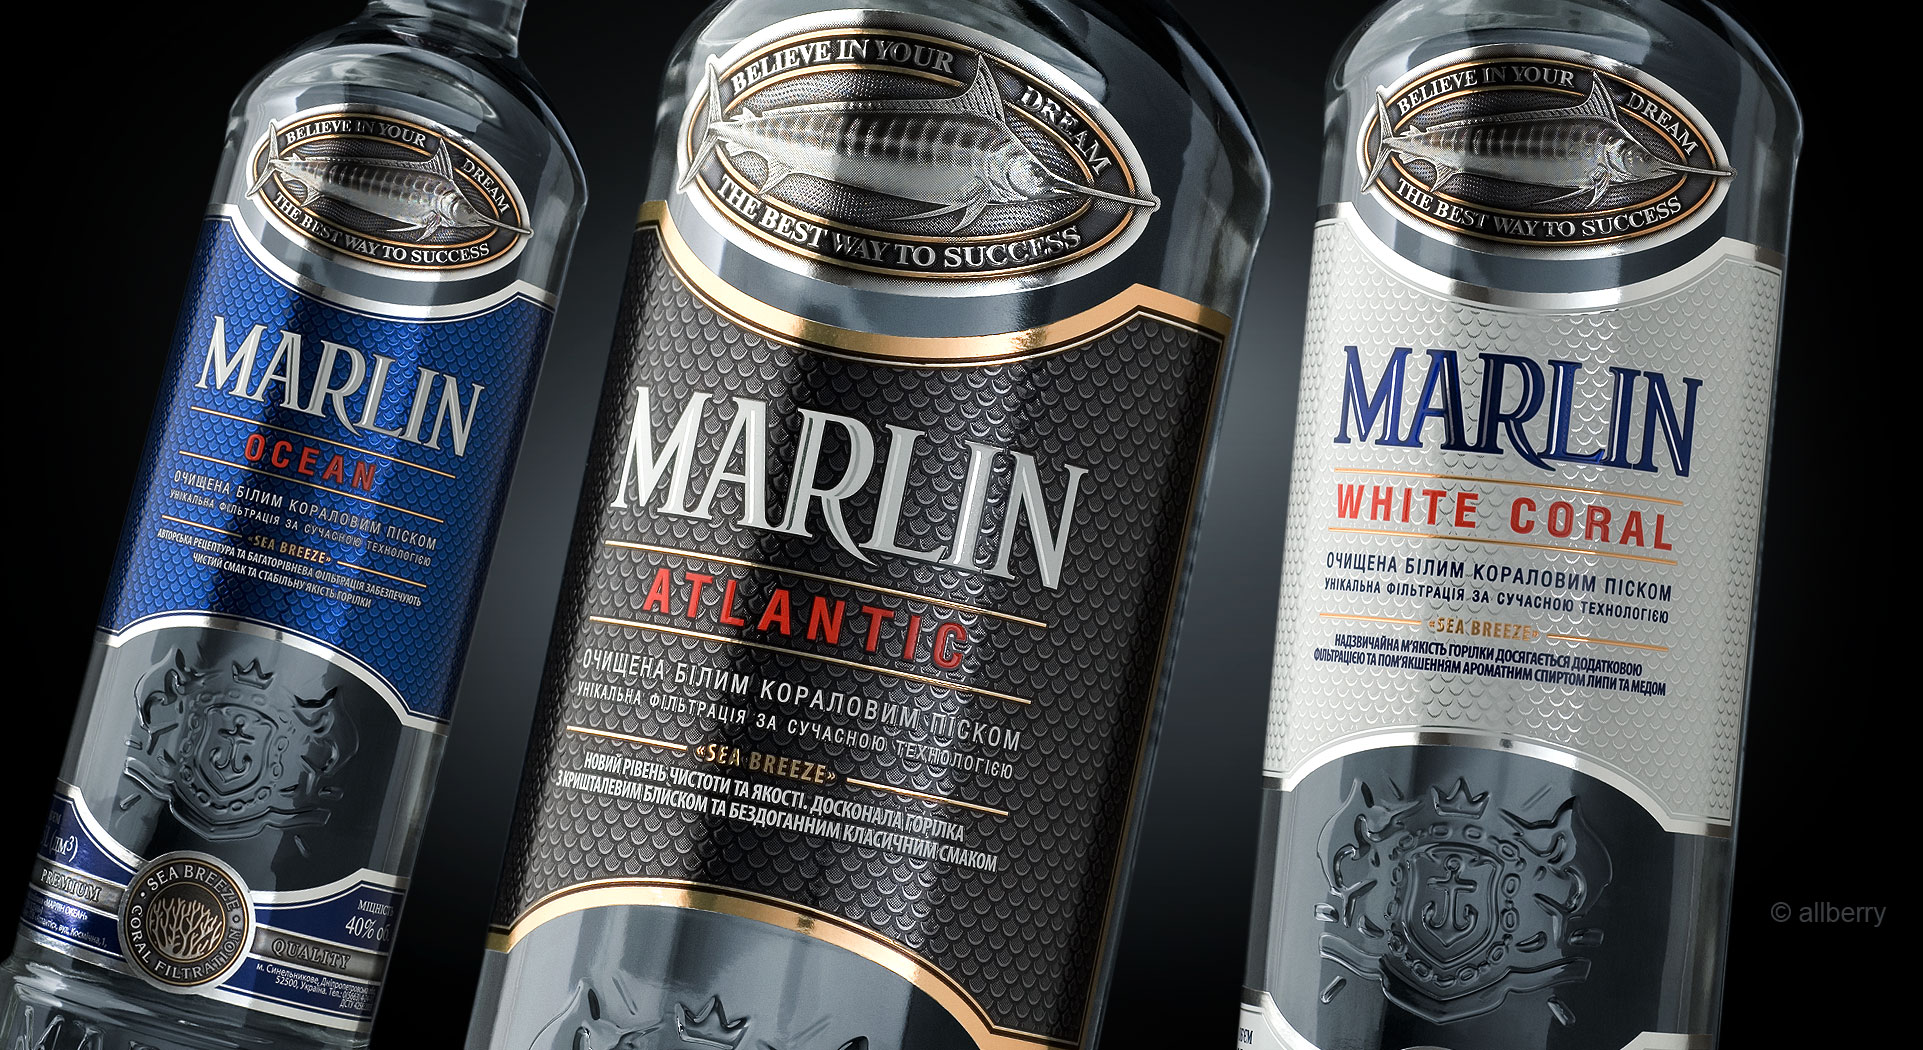 MARLIN vodka range. Bottle and label design.